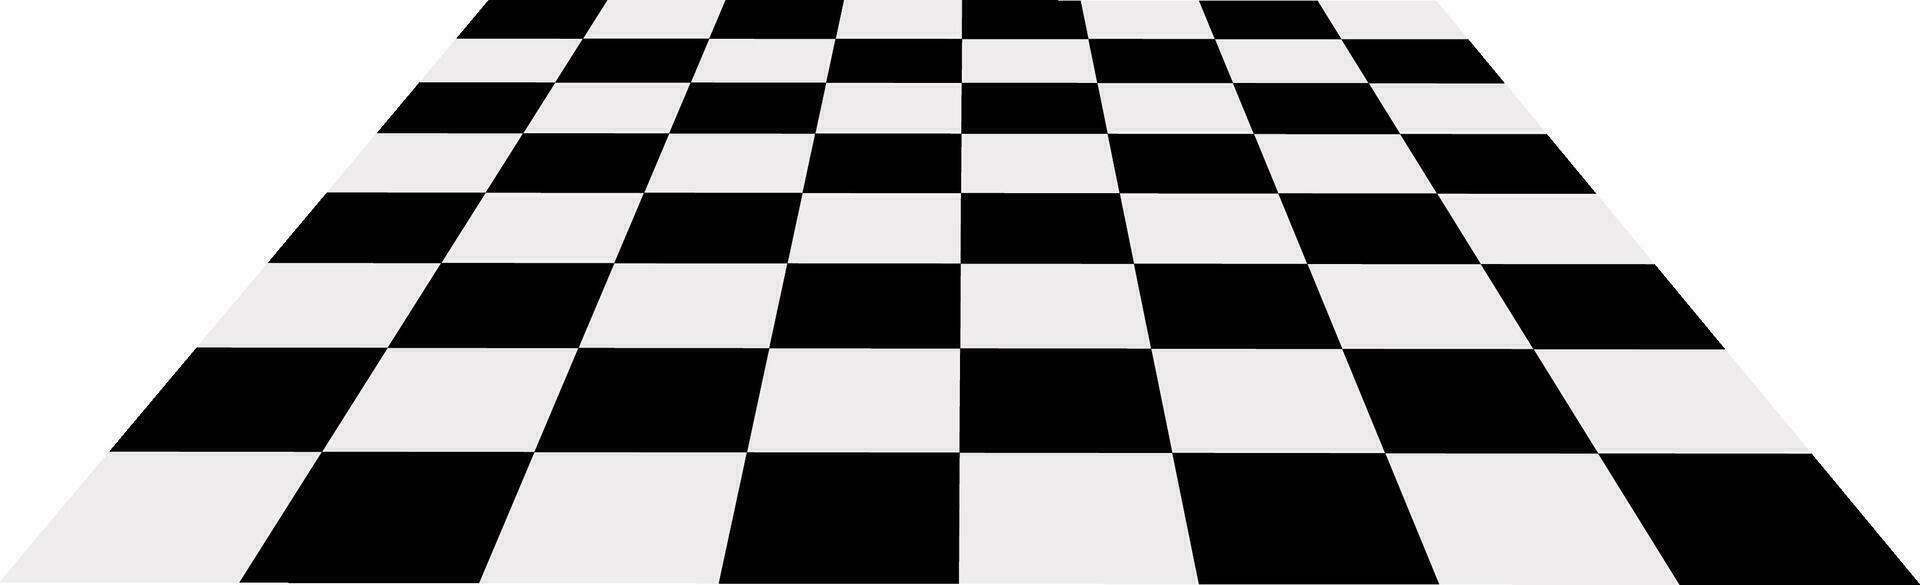 plano estilo ícone do uma xadrez borda. vetor